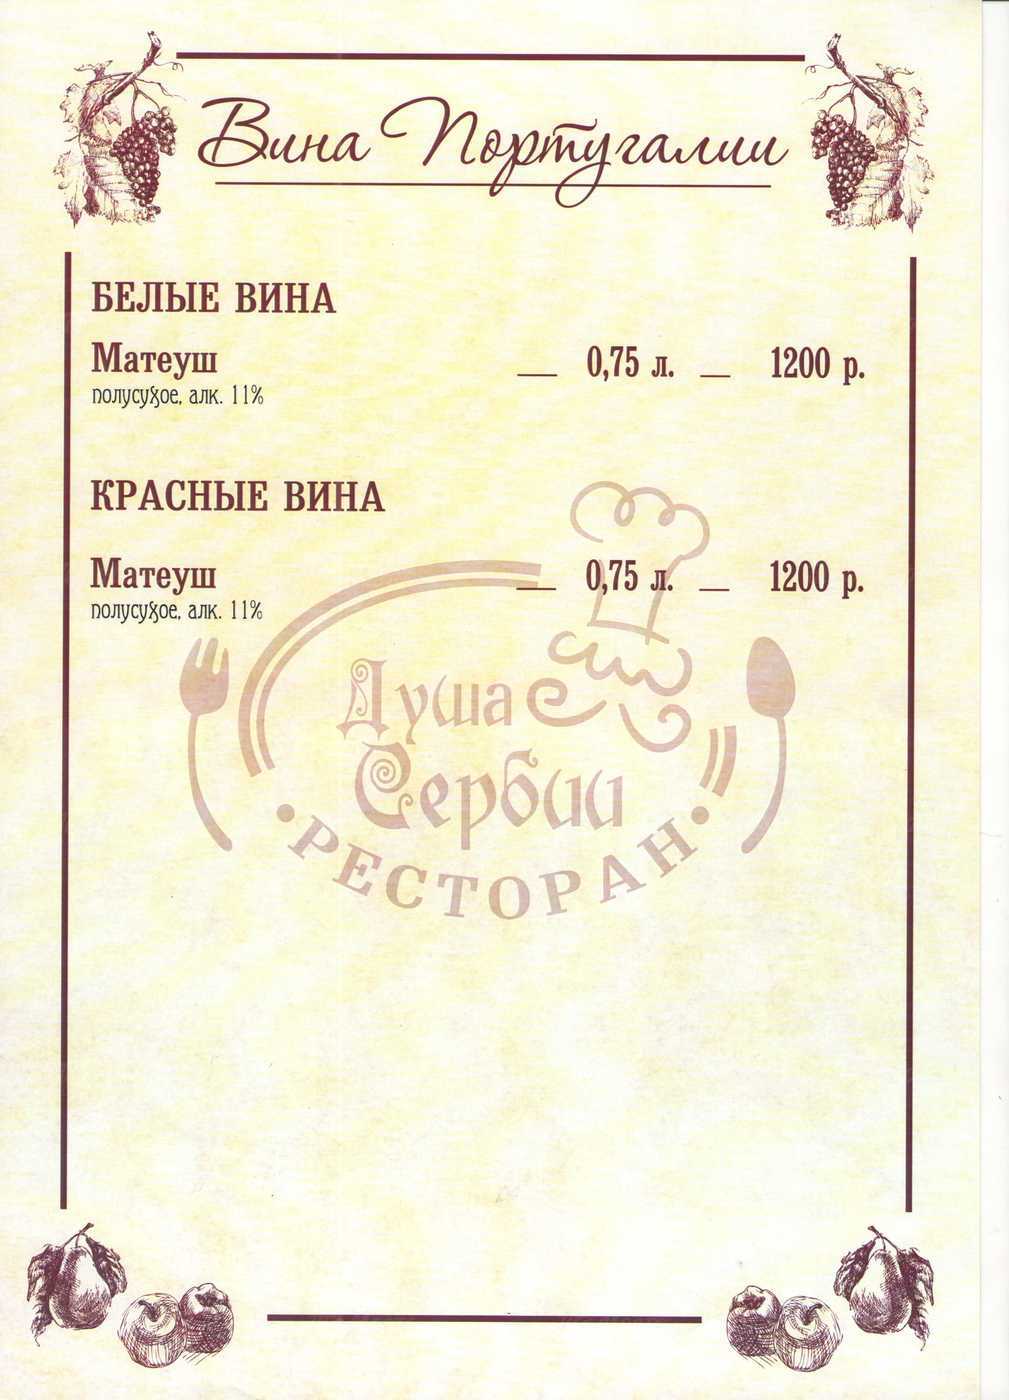 Меню и цены ресторана Душа Сербии в уле. Отто Шмидта фото 20